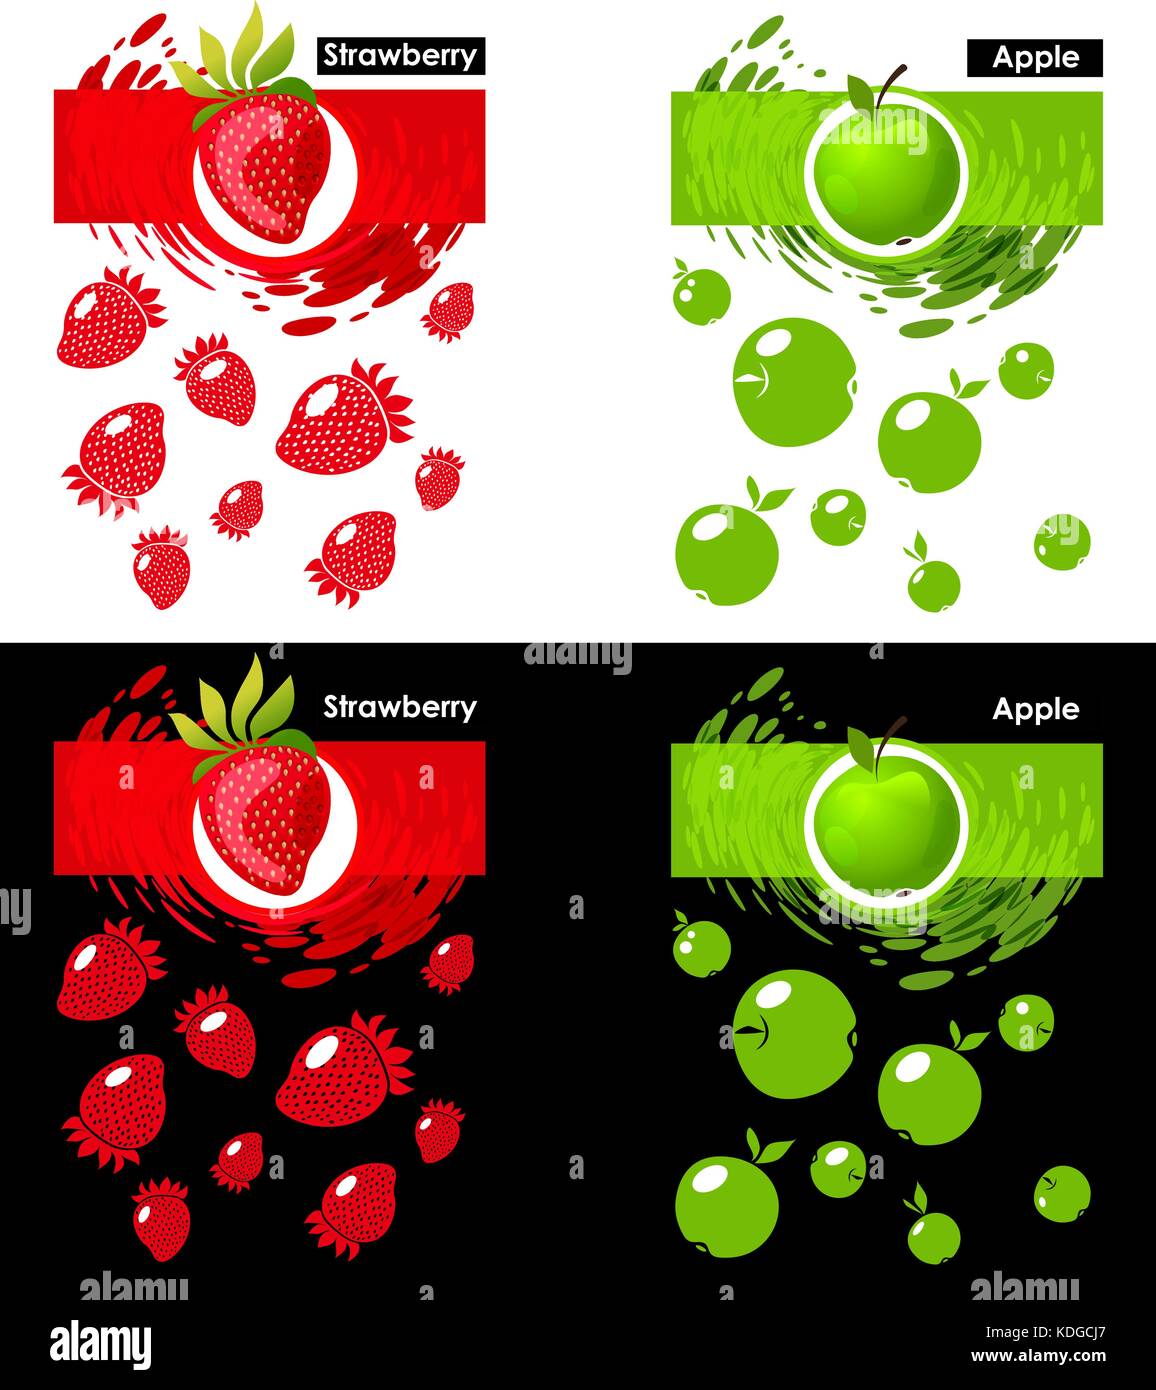 Libellé de l'icône de la pomme et de la fraise sur le blanc et le noir, motif fraise et pomme, toile de projection Illustration de Vecteur